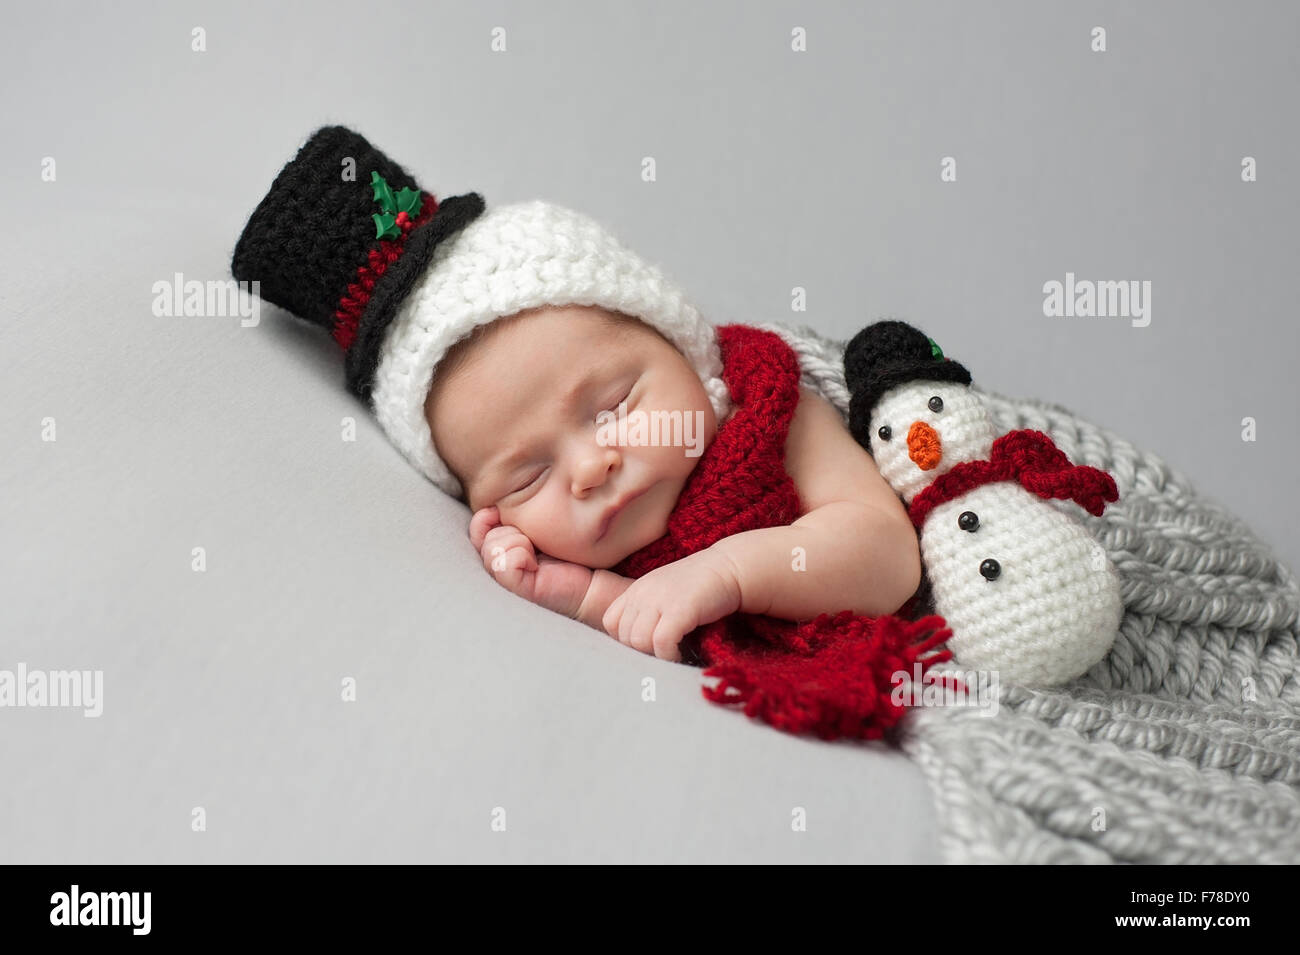 Schlafen, zwei Wochen alten Babys, Baby-junge trägt ein gehäkelter  Schneemann Mütze und Schal mit passenden Plüschtier Stockfotografie - Alamy